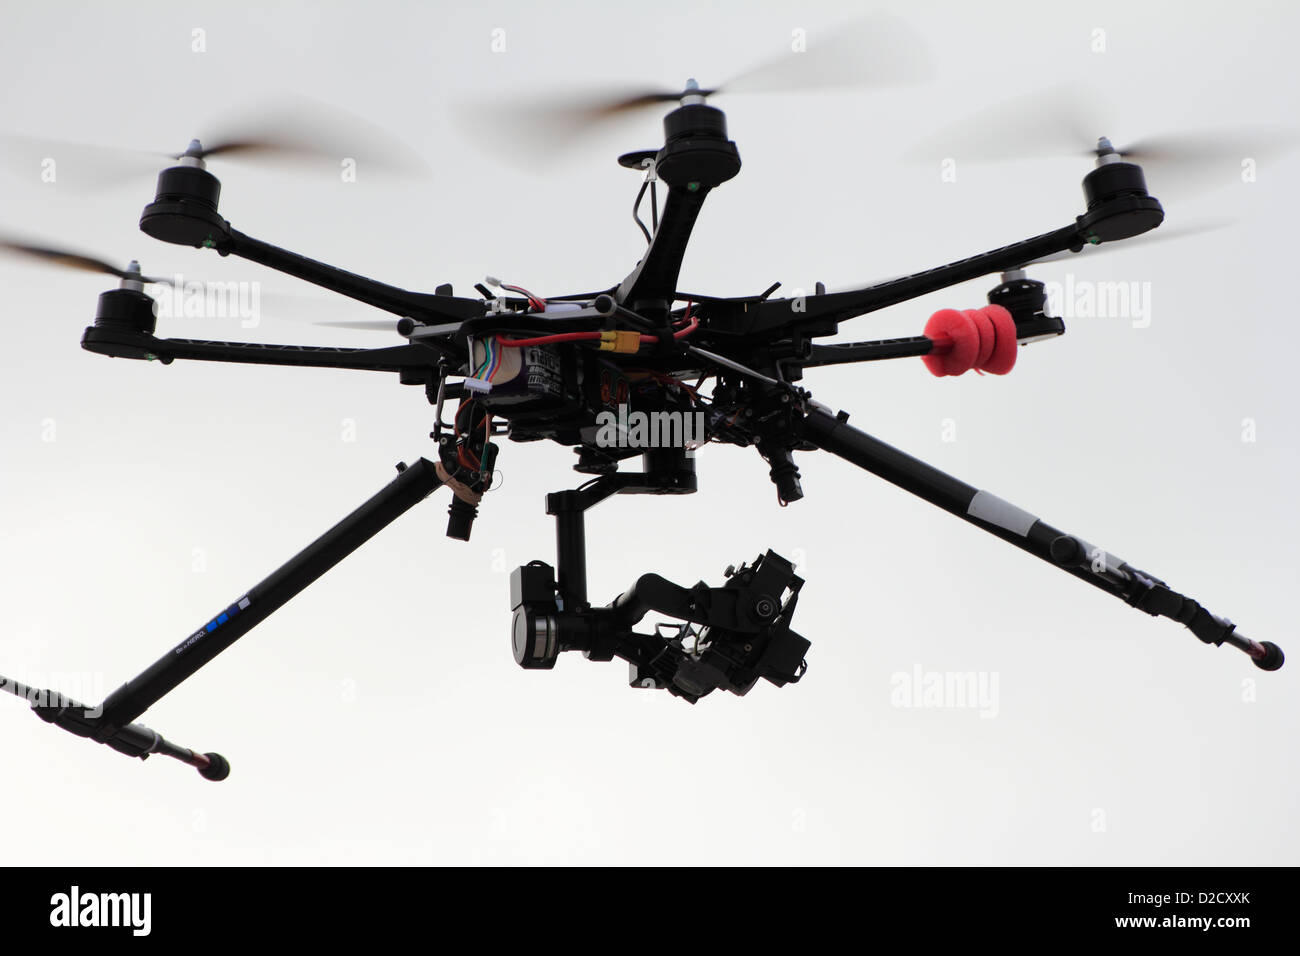 Une radio contrôlée octocopter ou drone équipé d'un appareil photo en prenant des photos des objets au sol pour un projet de photographie aérienne Banque D'Images